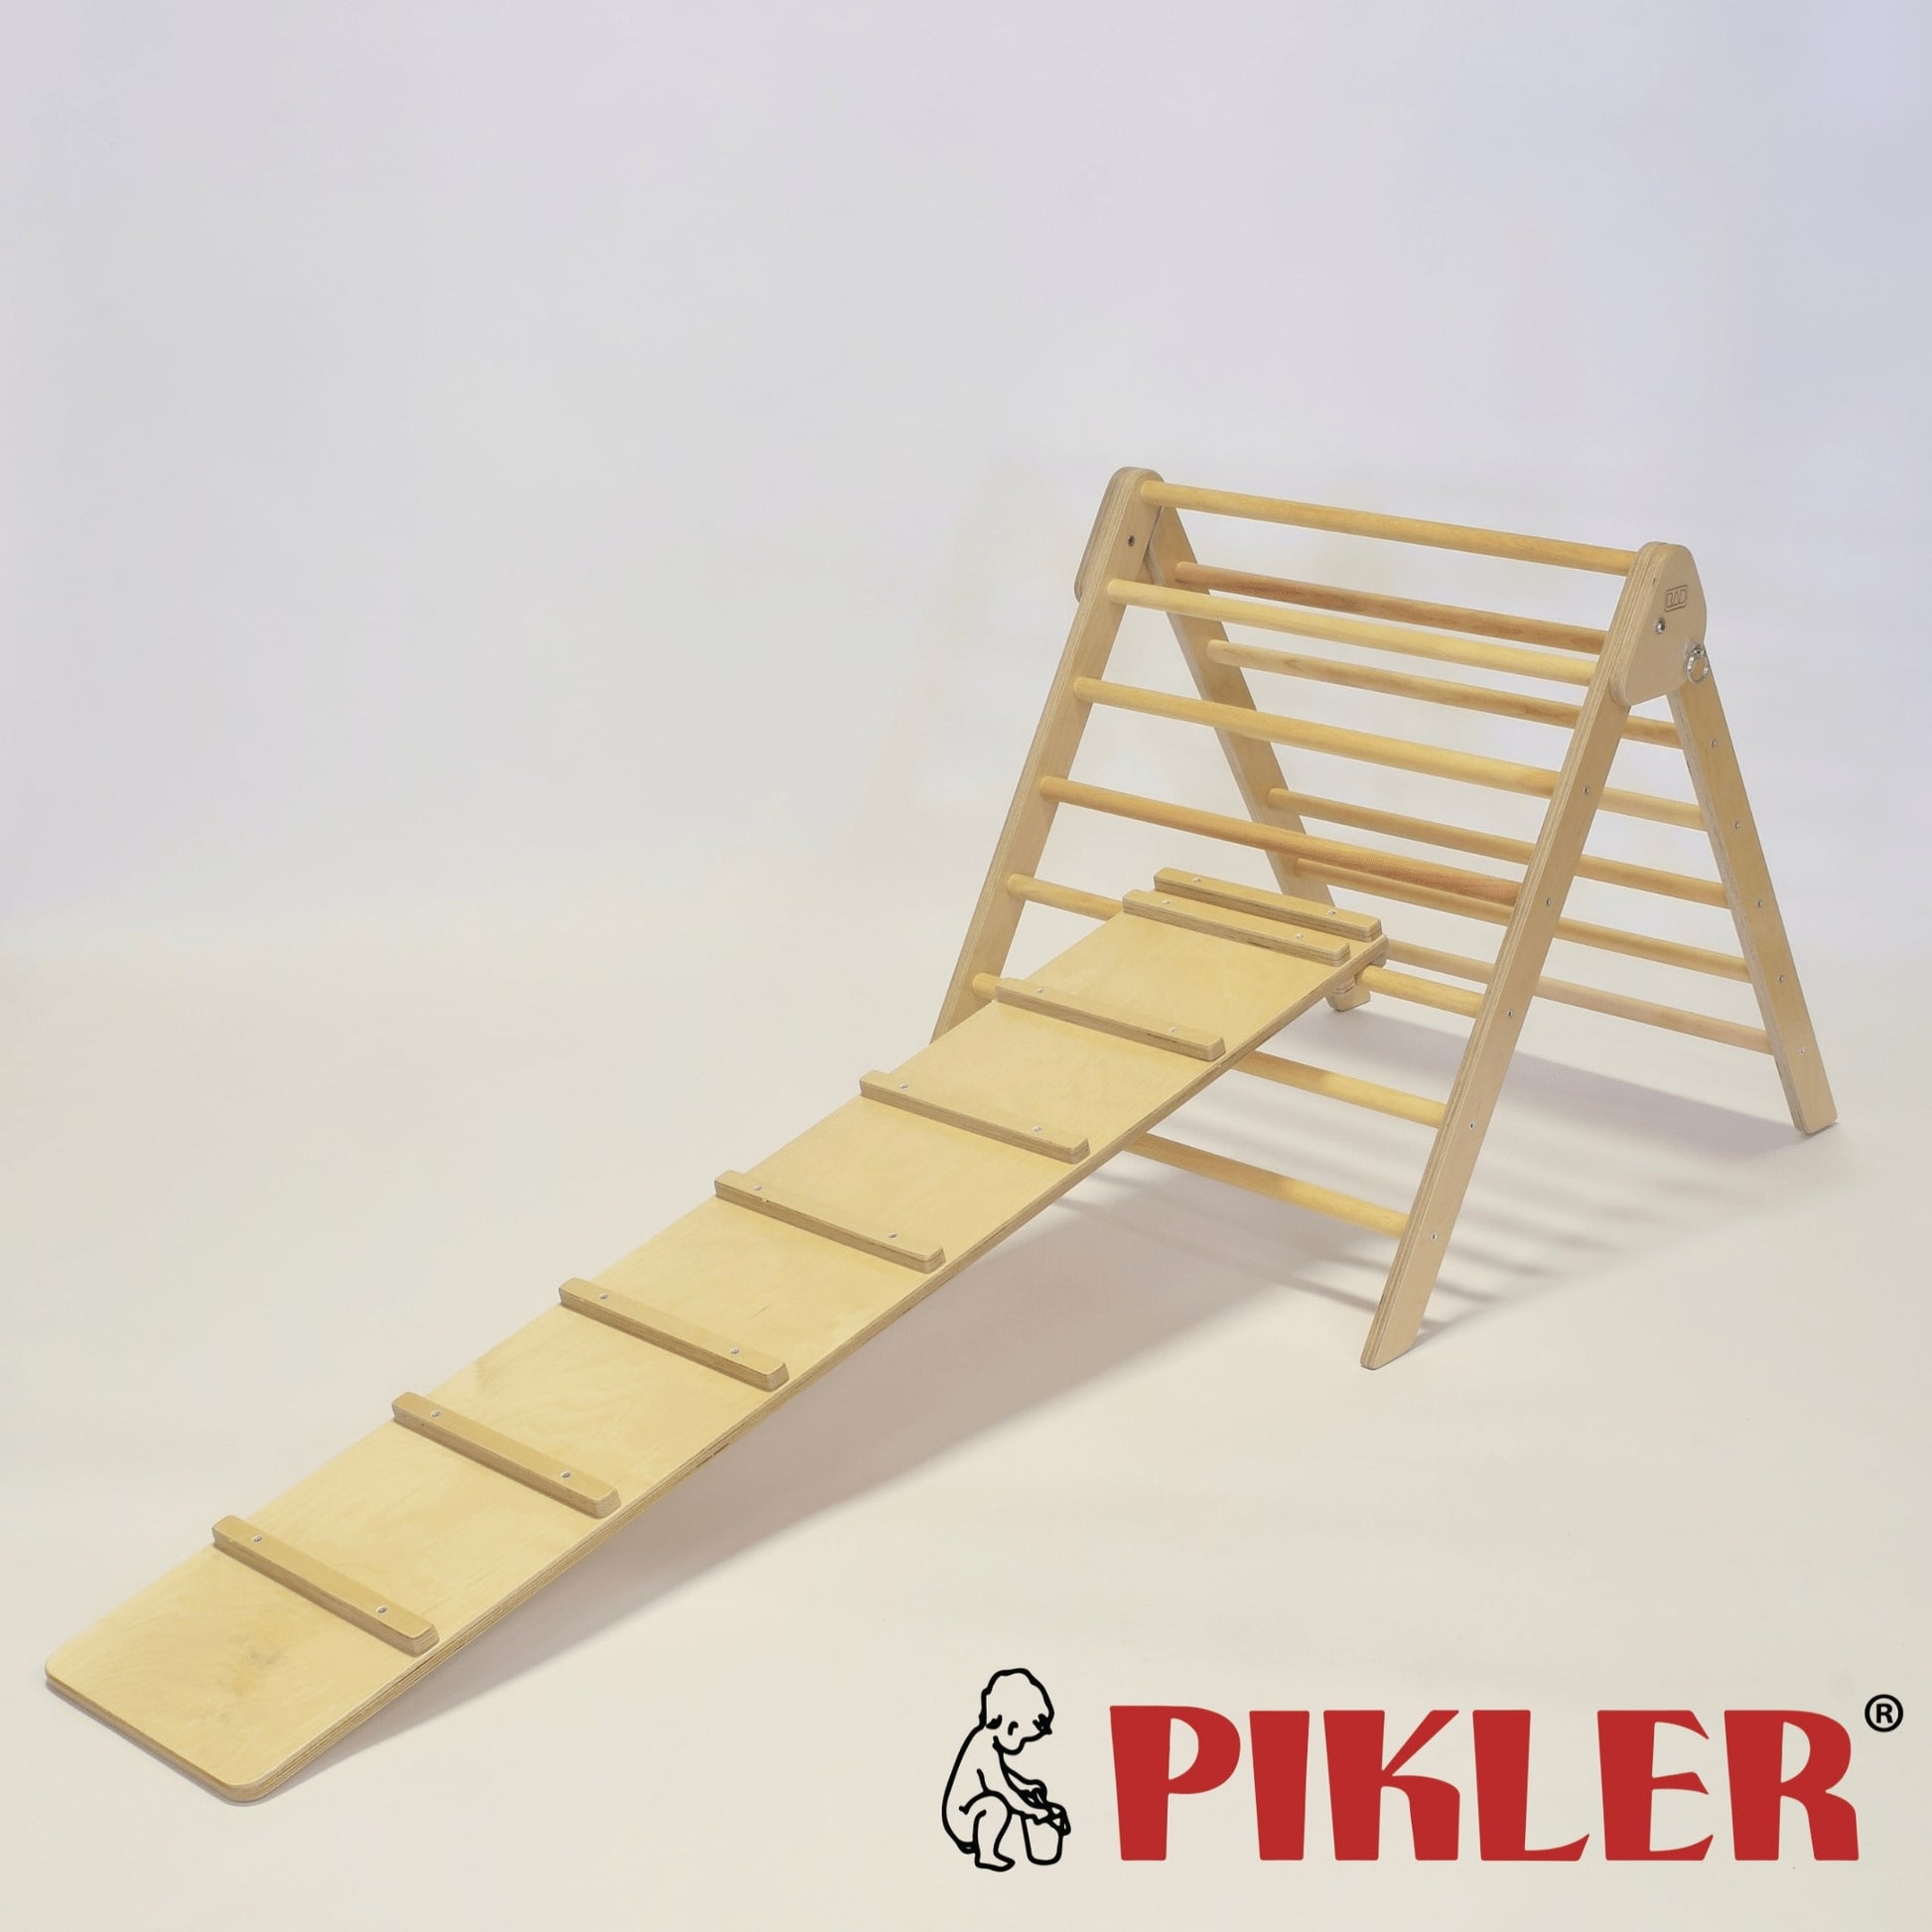 Triángulo de Aprendizaje Pikler Plegable Madera 90 x 50 x 80 CM. TREMS –  Woodgo